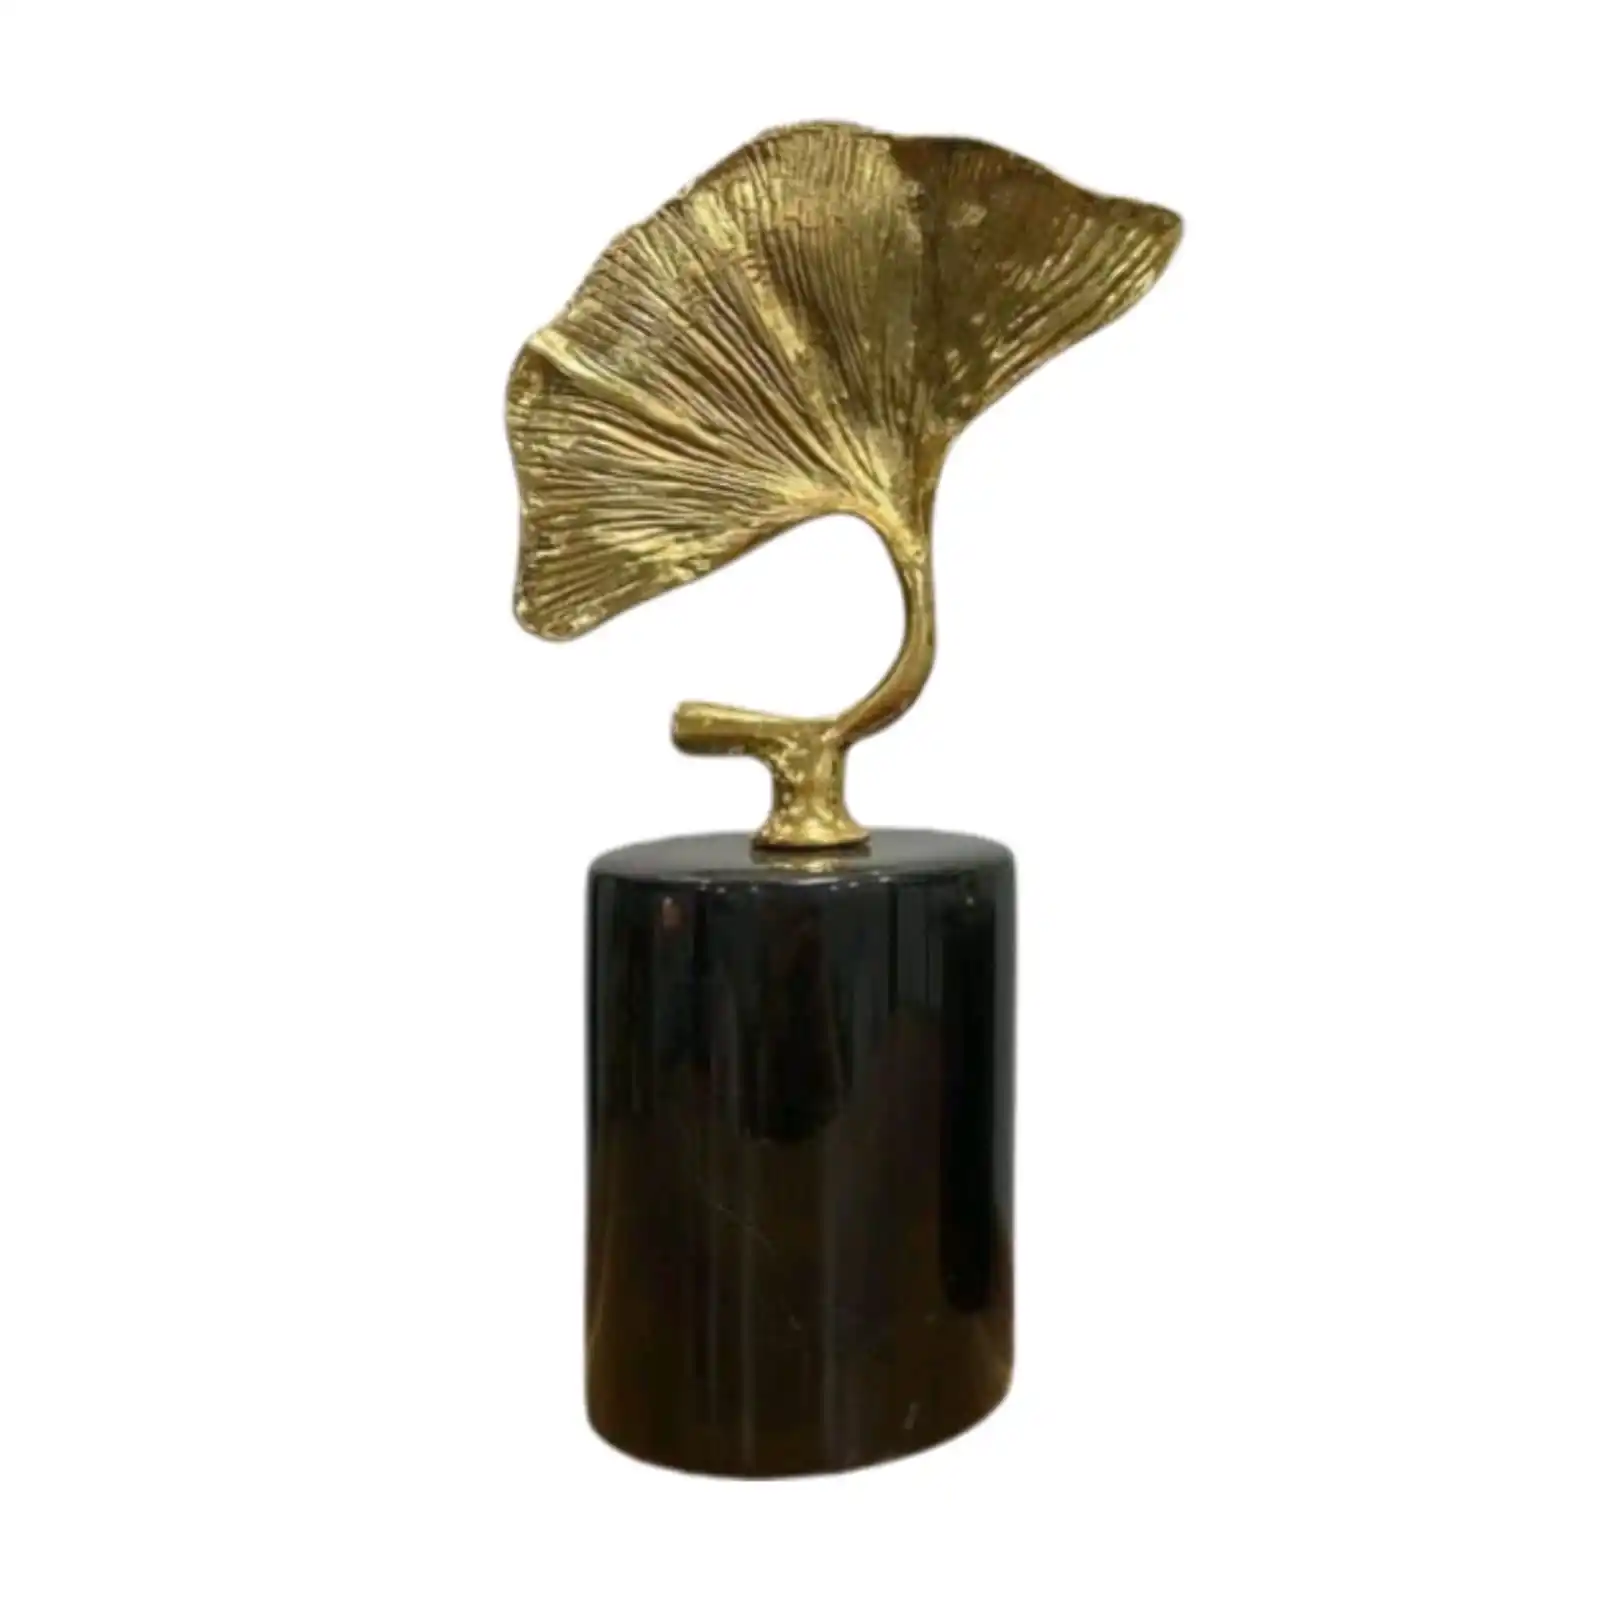 Decor Impex Modern Gold metal Home Decor Escultura, Estátua folha única com base de mármore preto, Modern Home Decor objeto para venda